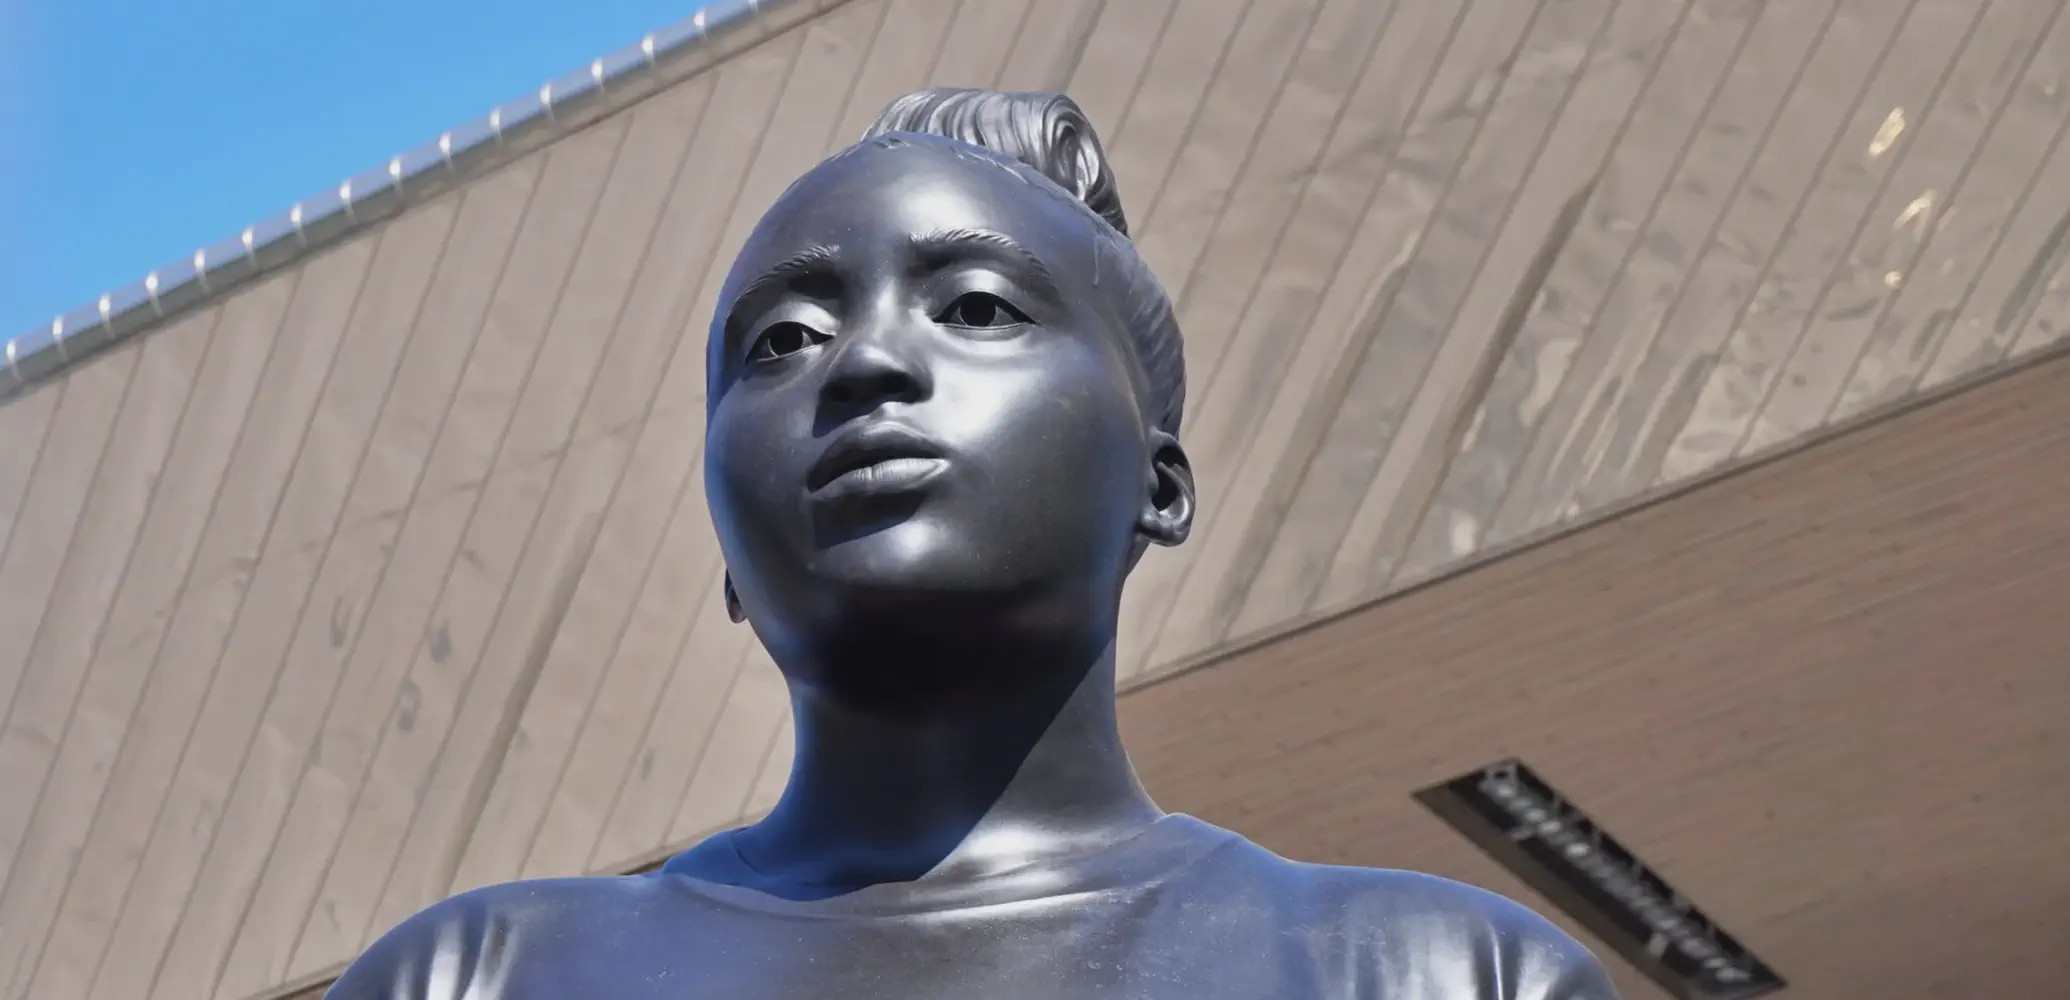 Het doel van het controversiële standbeeld in Rotterdam